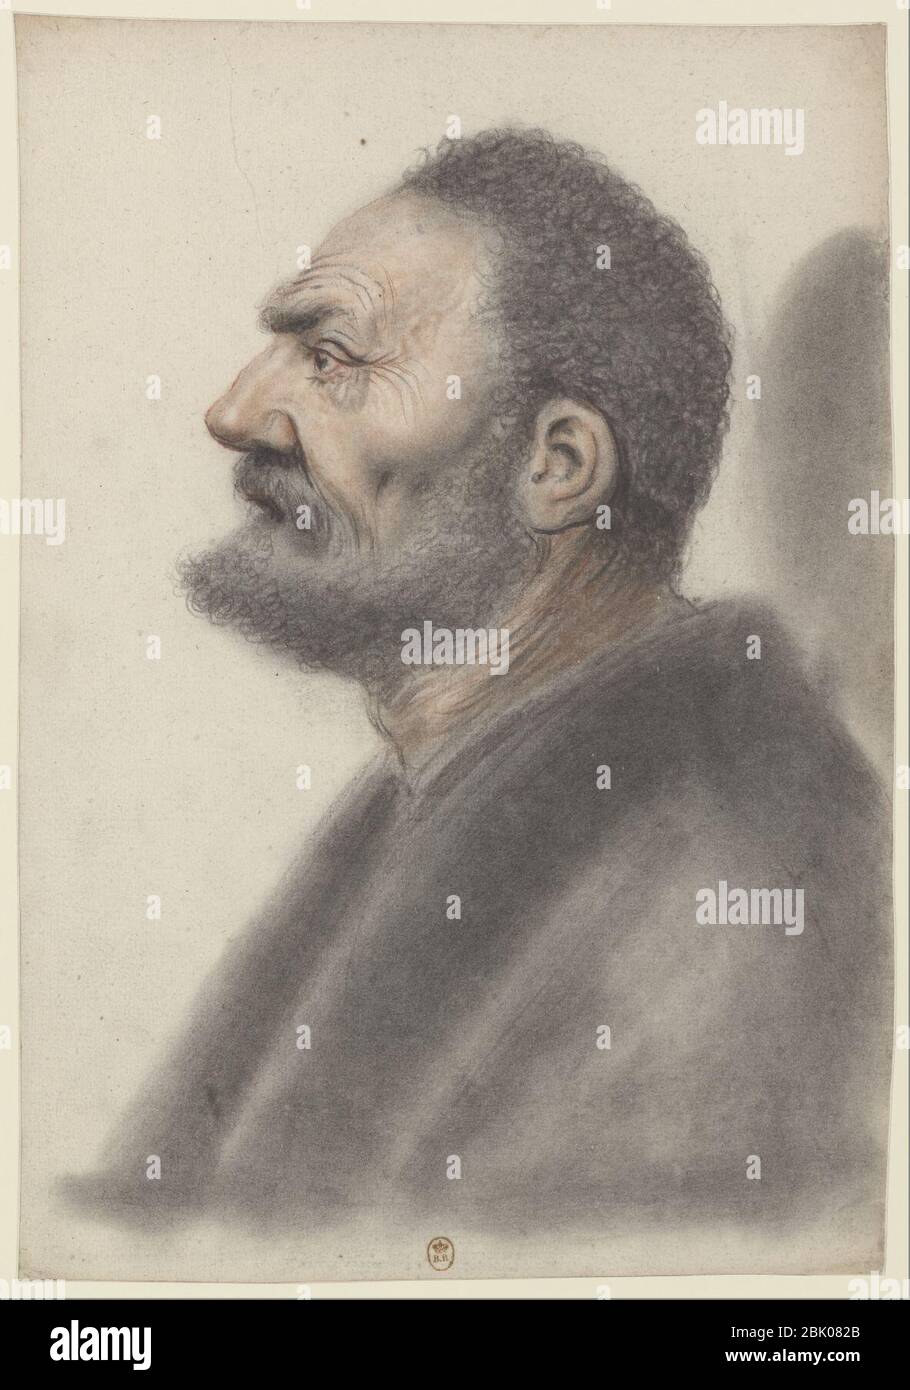 Homme à la barbe courte et aux cheveux frisés, la tête légèrement relevée,  de profil à gauche (Nicolas Lagneau Stock Photo - Alamy